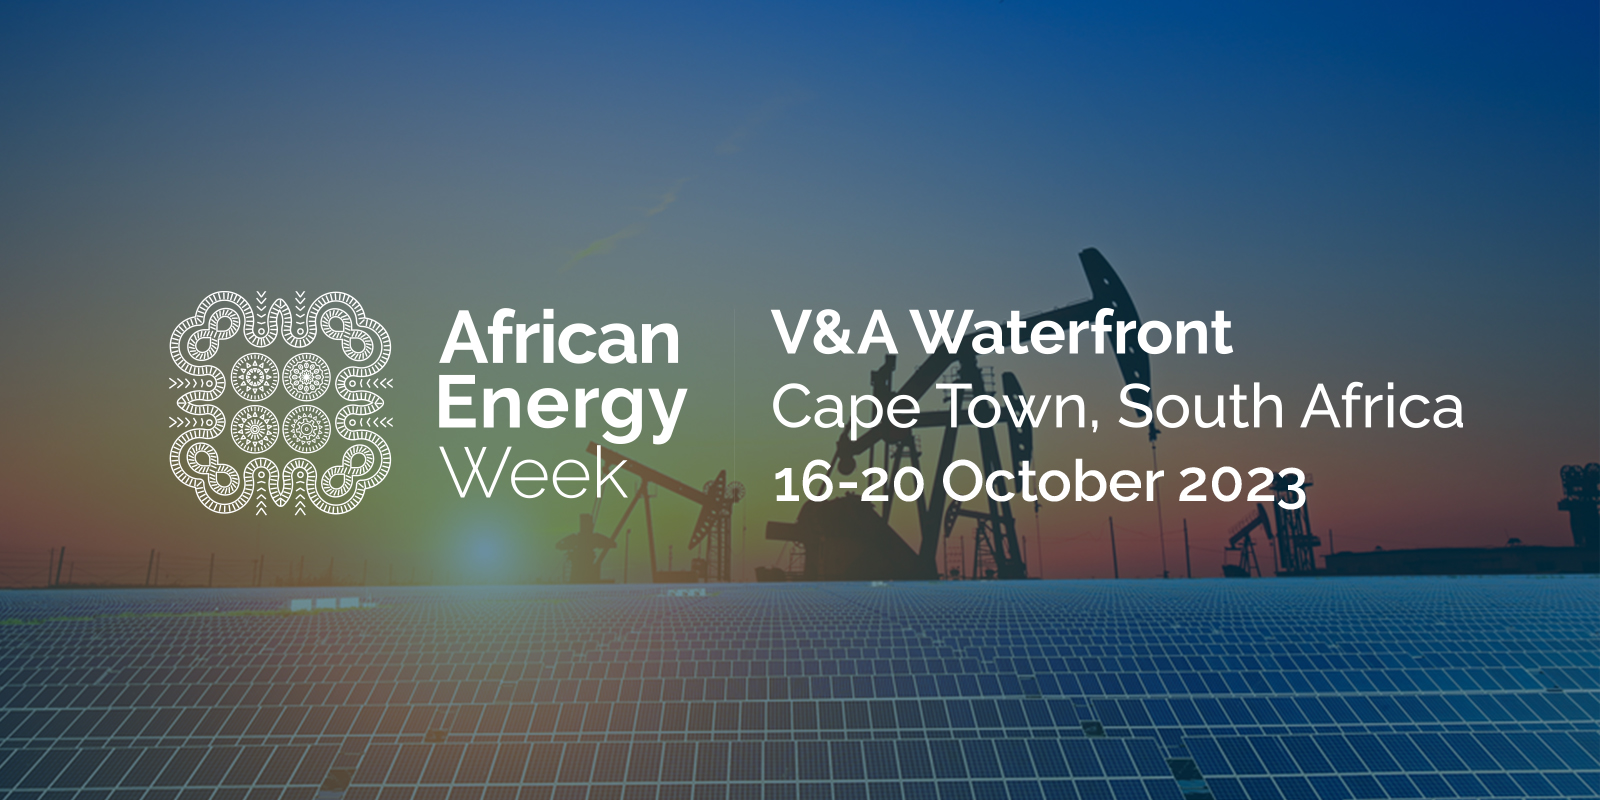 Les pourparlers avec Hyve Group/Africa Oil Week sont officiellement terminés ; L'African Energy Week est prévue du 16 au 20 octobre à Cape Town